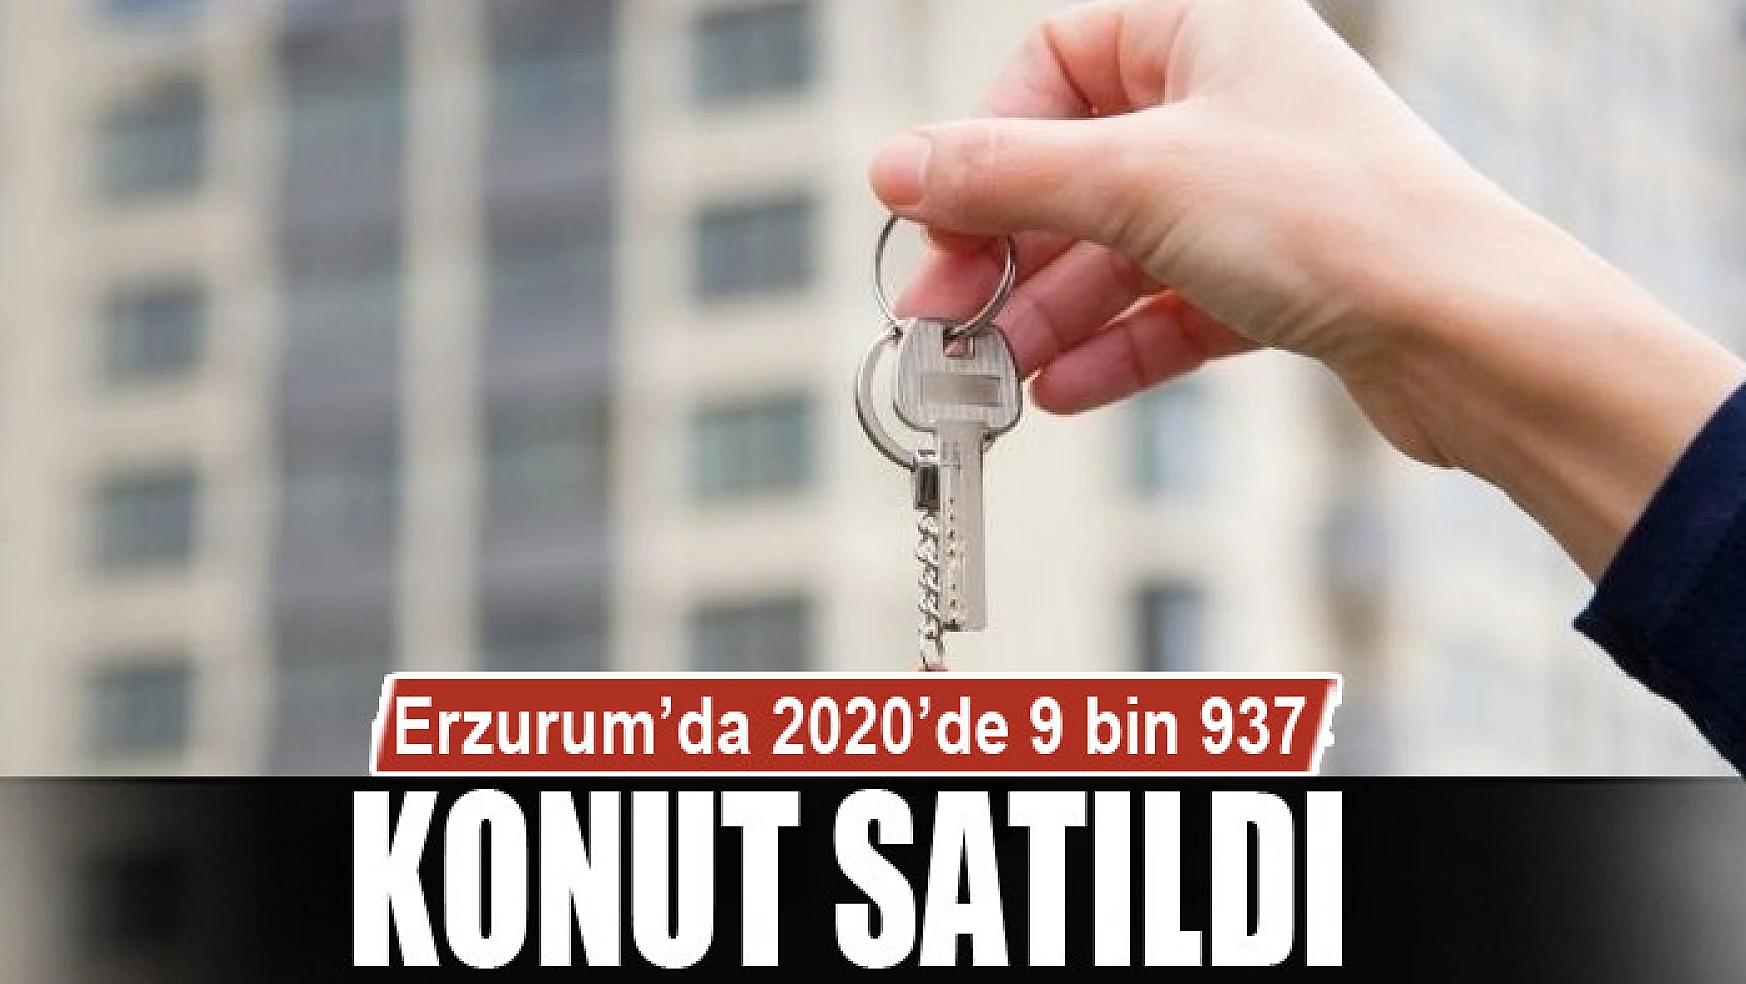 Erzurum'da 2020'de 9 bin 937 konut satıldı